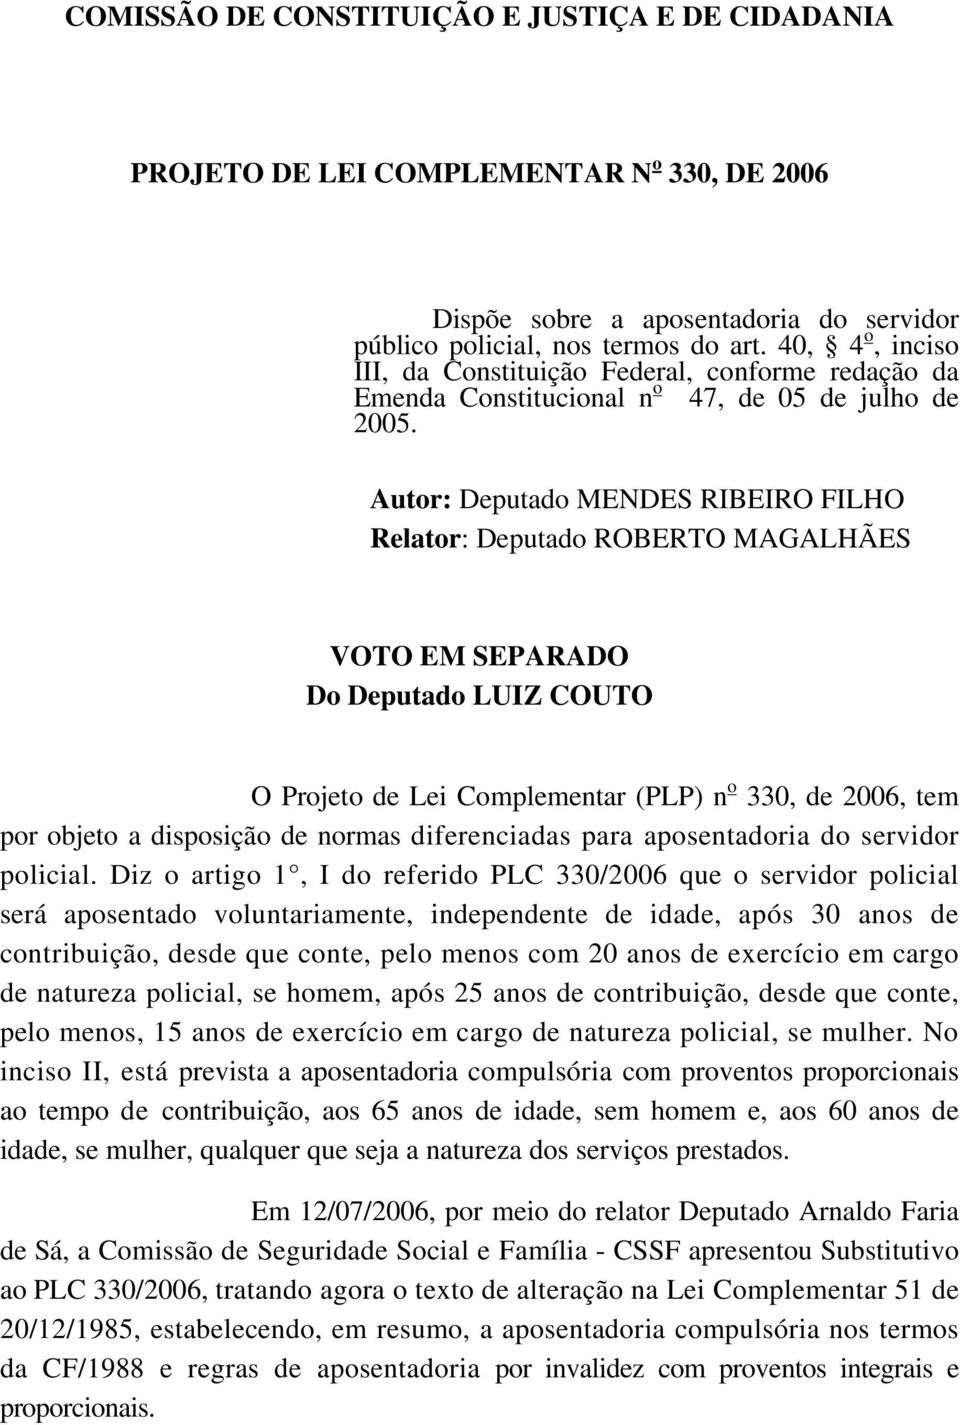 Autor: Deputado MENDES RIBEIRO FILHO Relator: Deputado ROBERTO MAGALHÃES VOTO EM SEPARADO Do Deputado LUIZ COUTO O Projeto de Lei Complementar (PLP) n o 330, de 2006, tem por objeto a disposição de